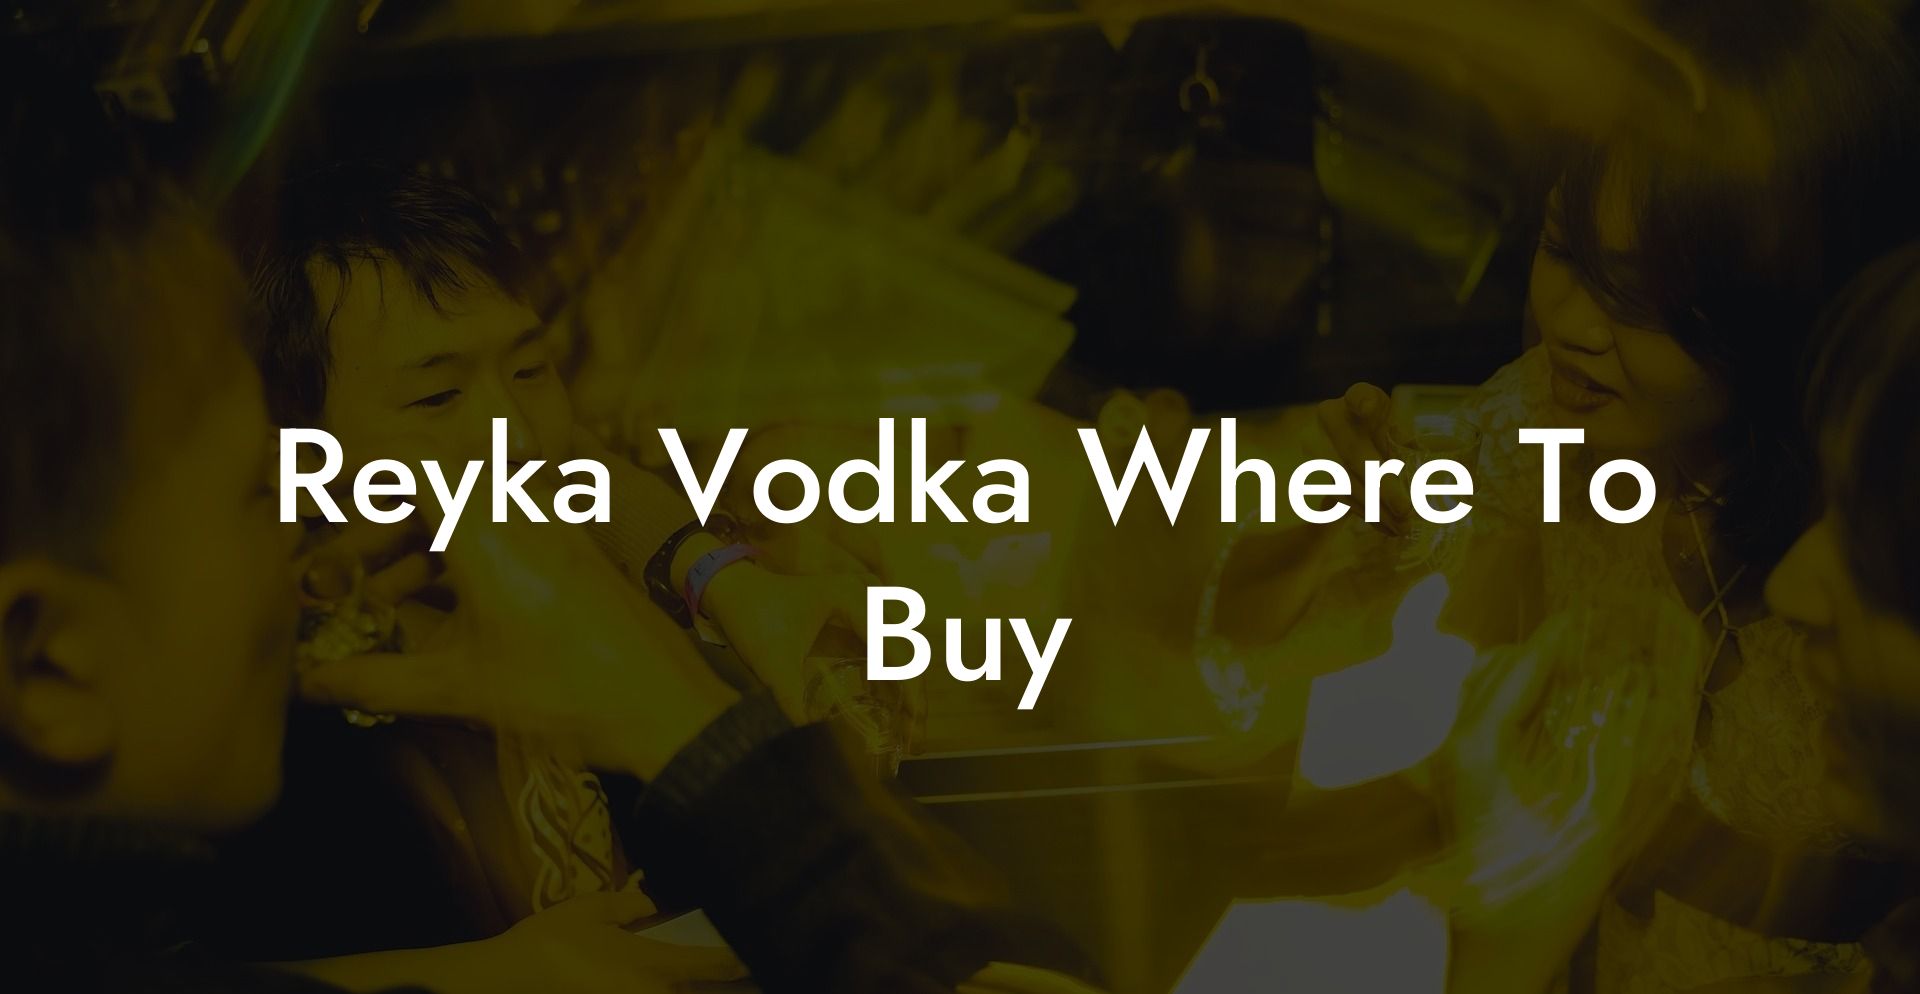 Reyka Vodka Where To Buy